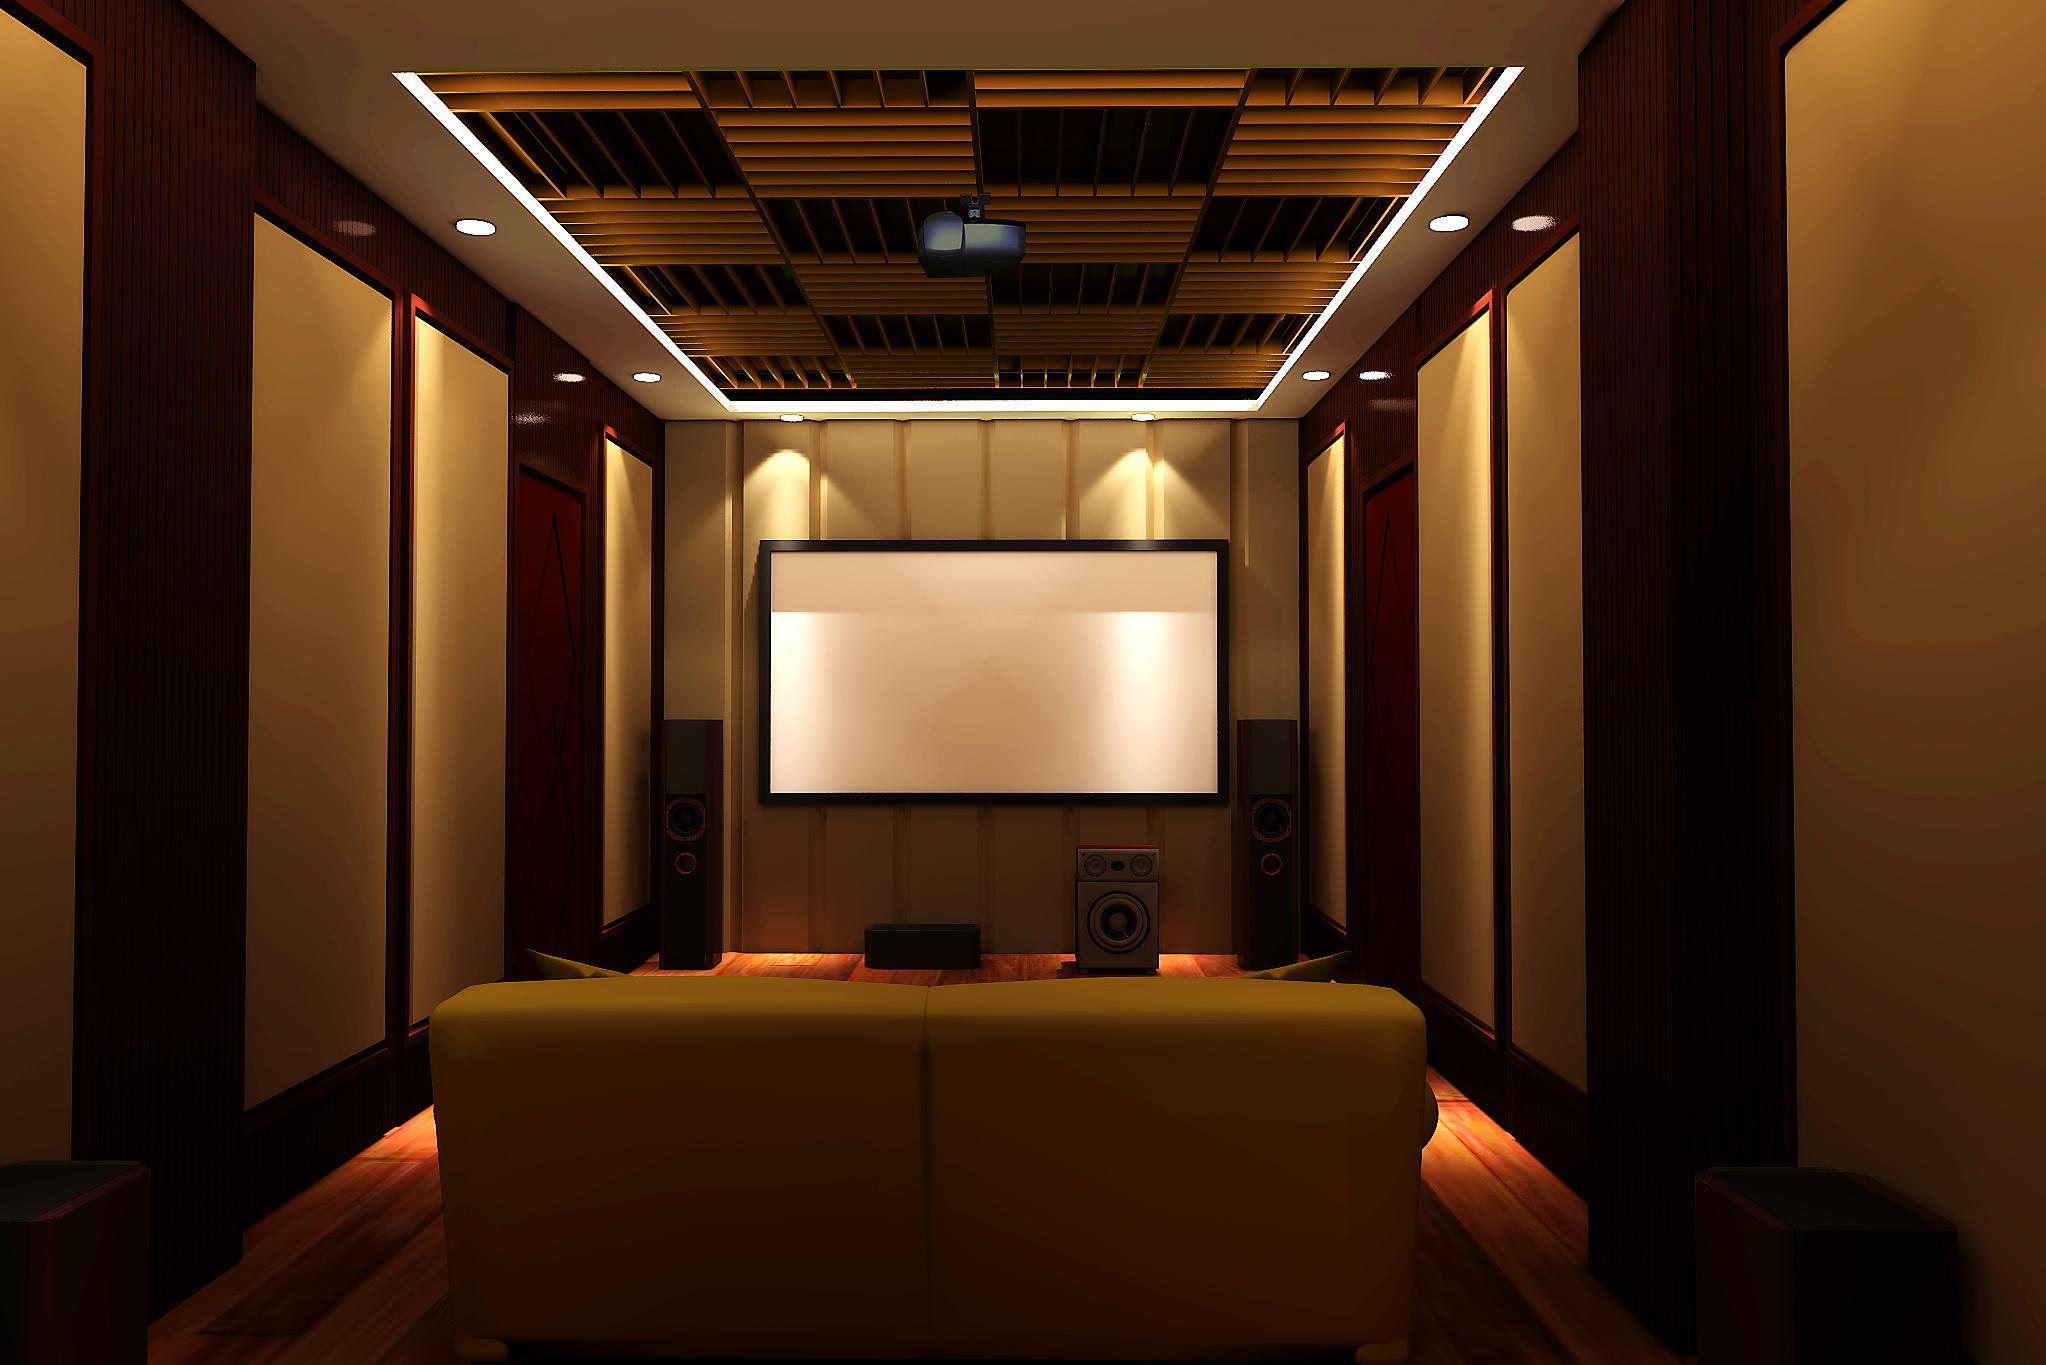 家庭影院相比,私家影院通常选用独立的影音室,并对室内进行专